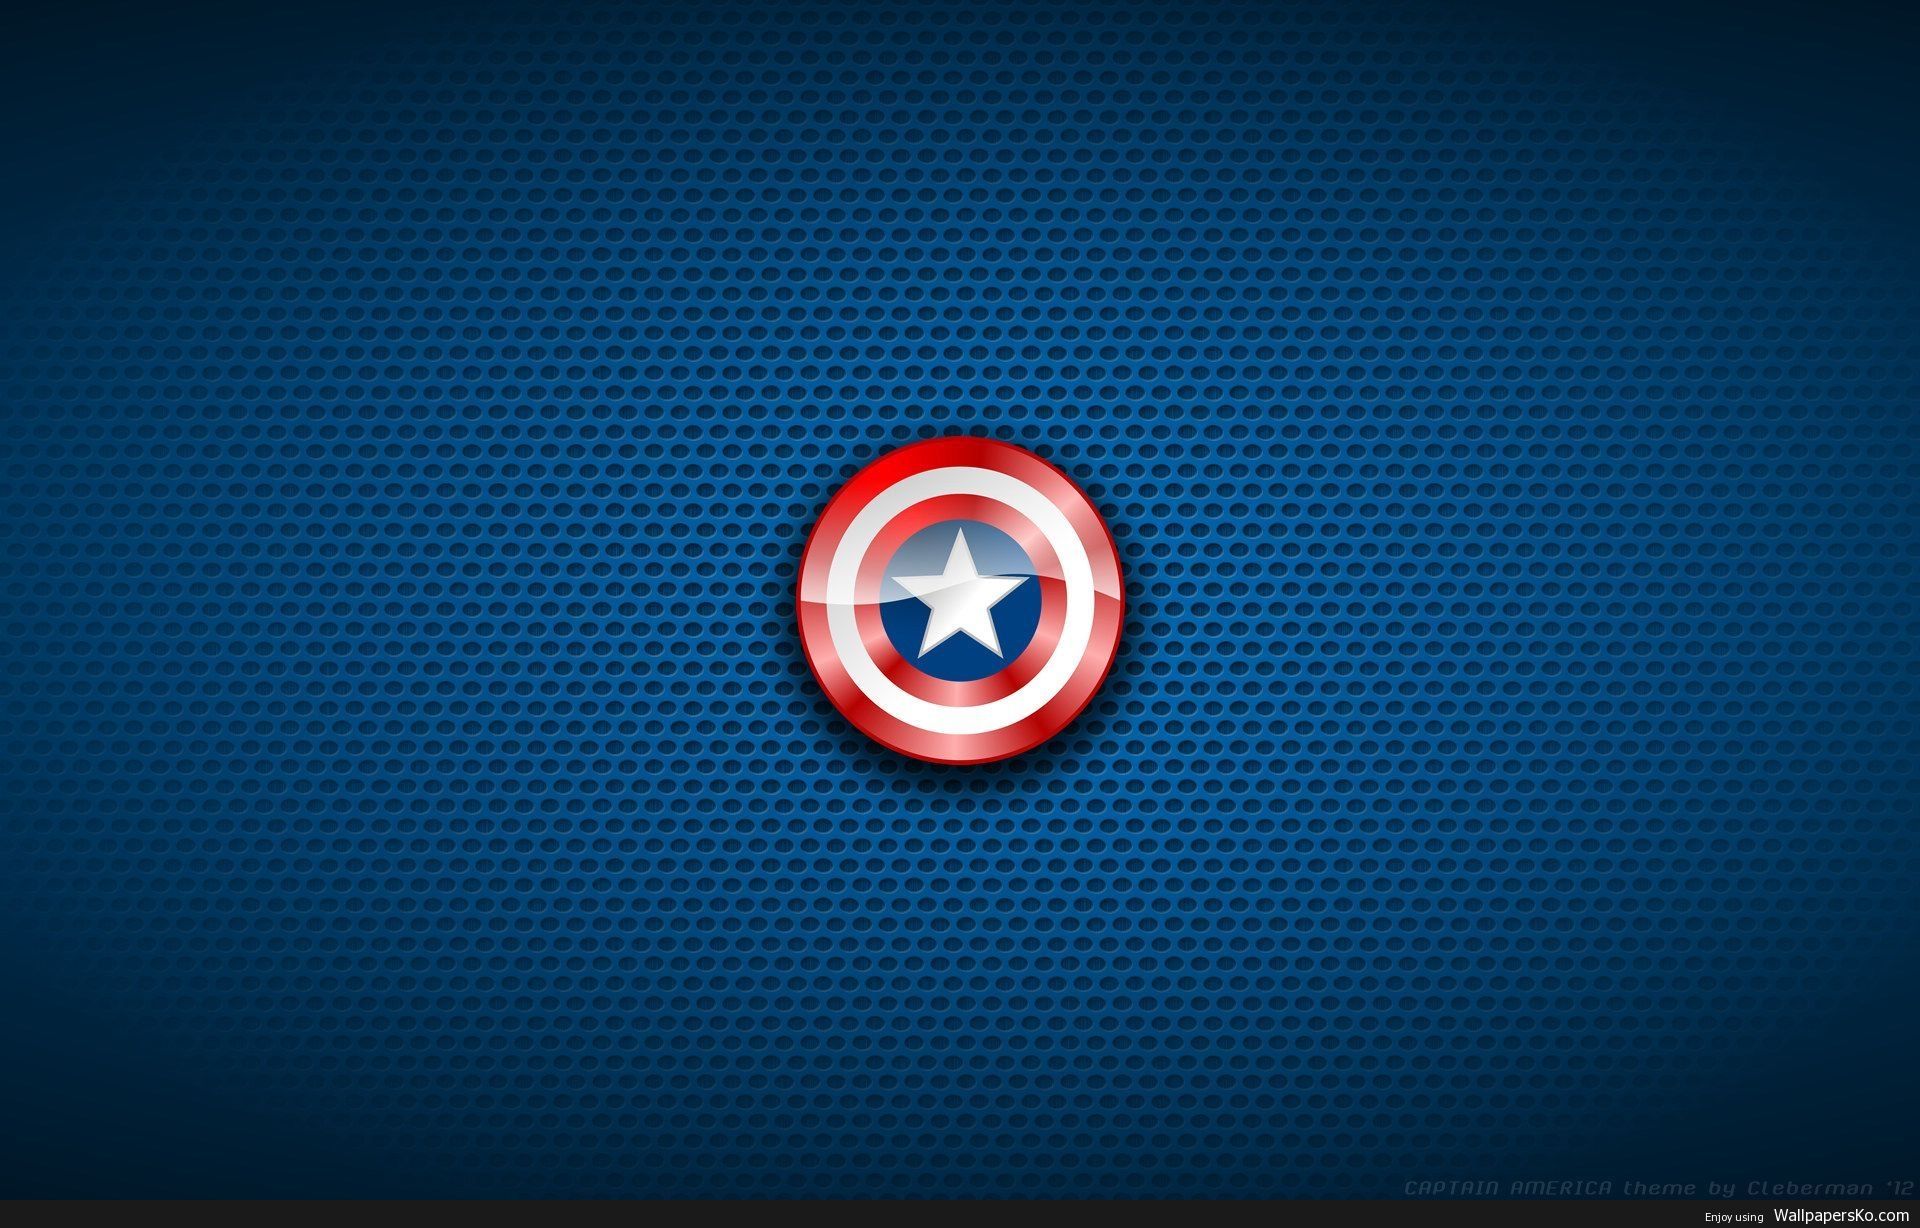 Superhero Logo Wallpaper /superhero Logo Wallpaper.h. Captain America Wallpaper, Captain America Shield Wallpaper, Captain America Image